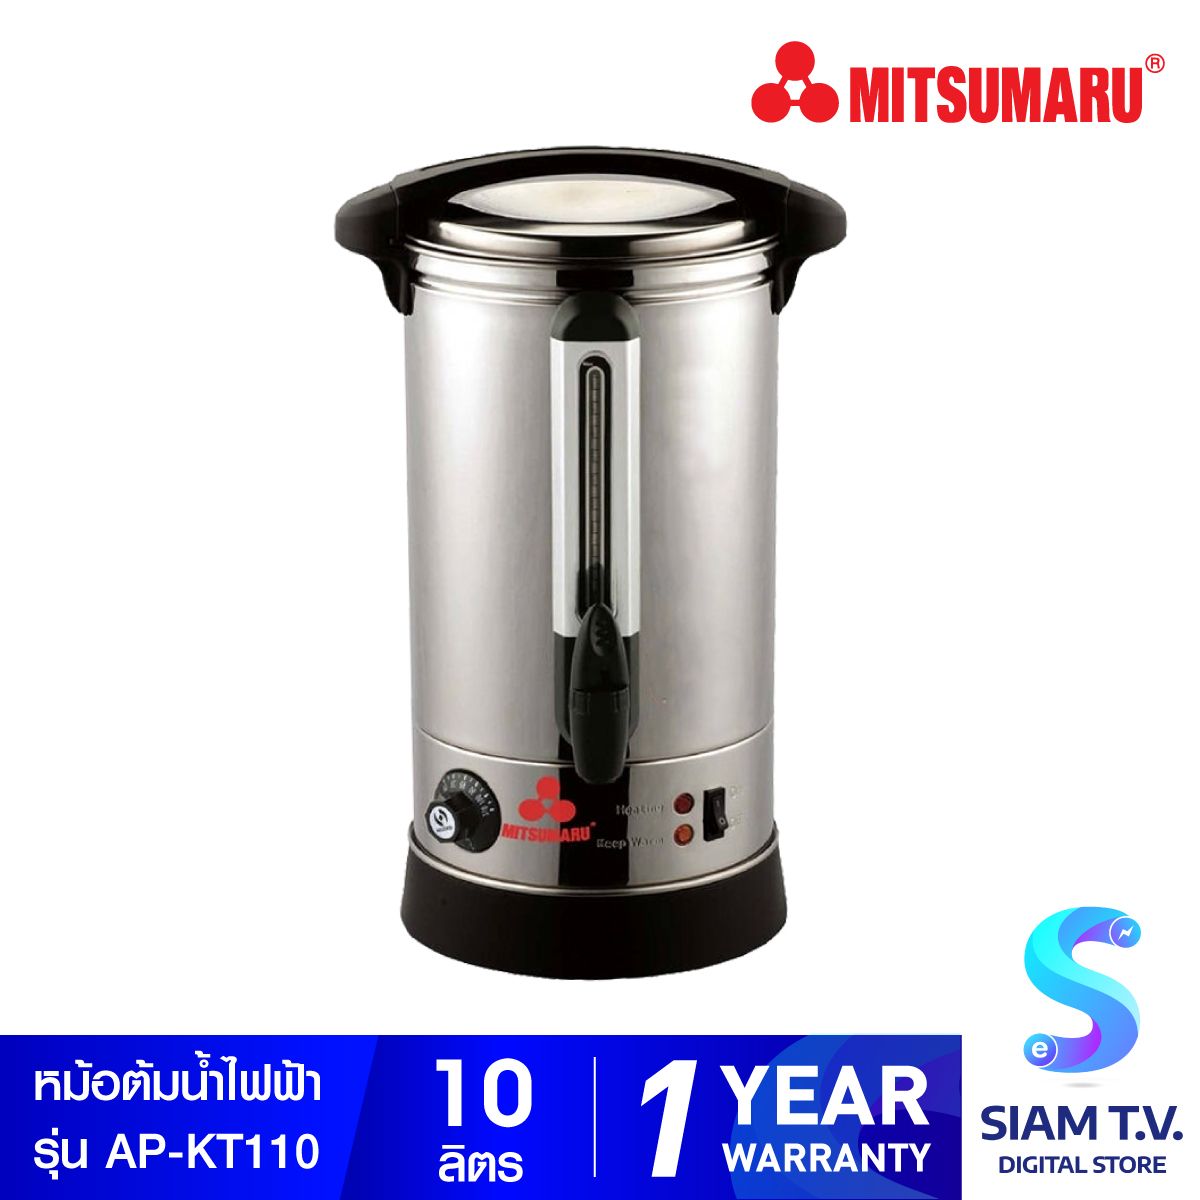 MITSUMARU ถังต้มน้ำไฟฟ้า 10 ลิตร รุ่น AP-KT110